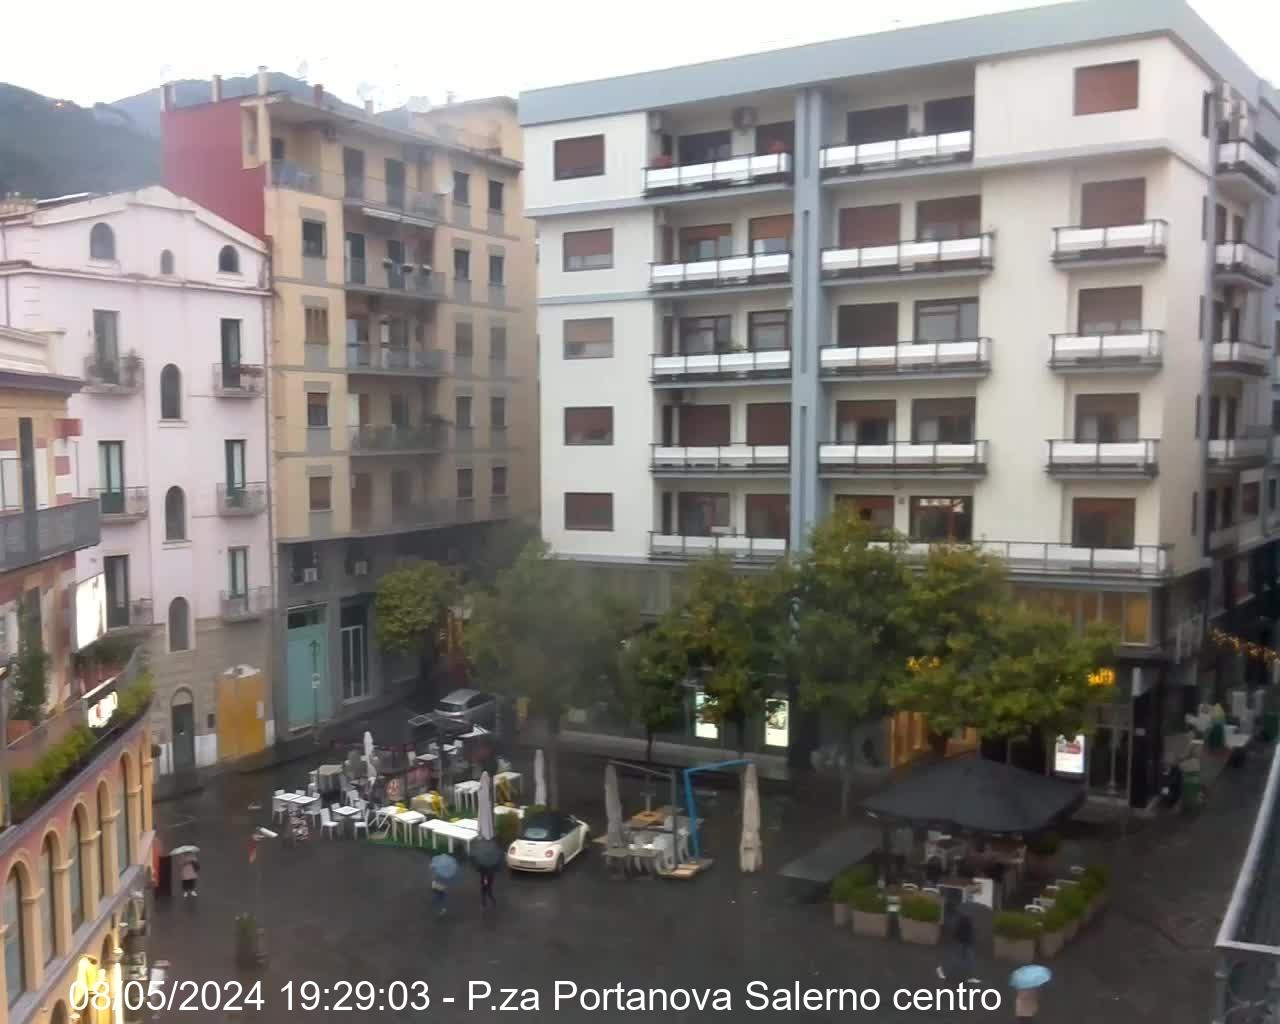 Salerno centro (SA) live Webcam - Ultima immagine ripresa